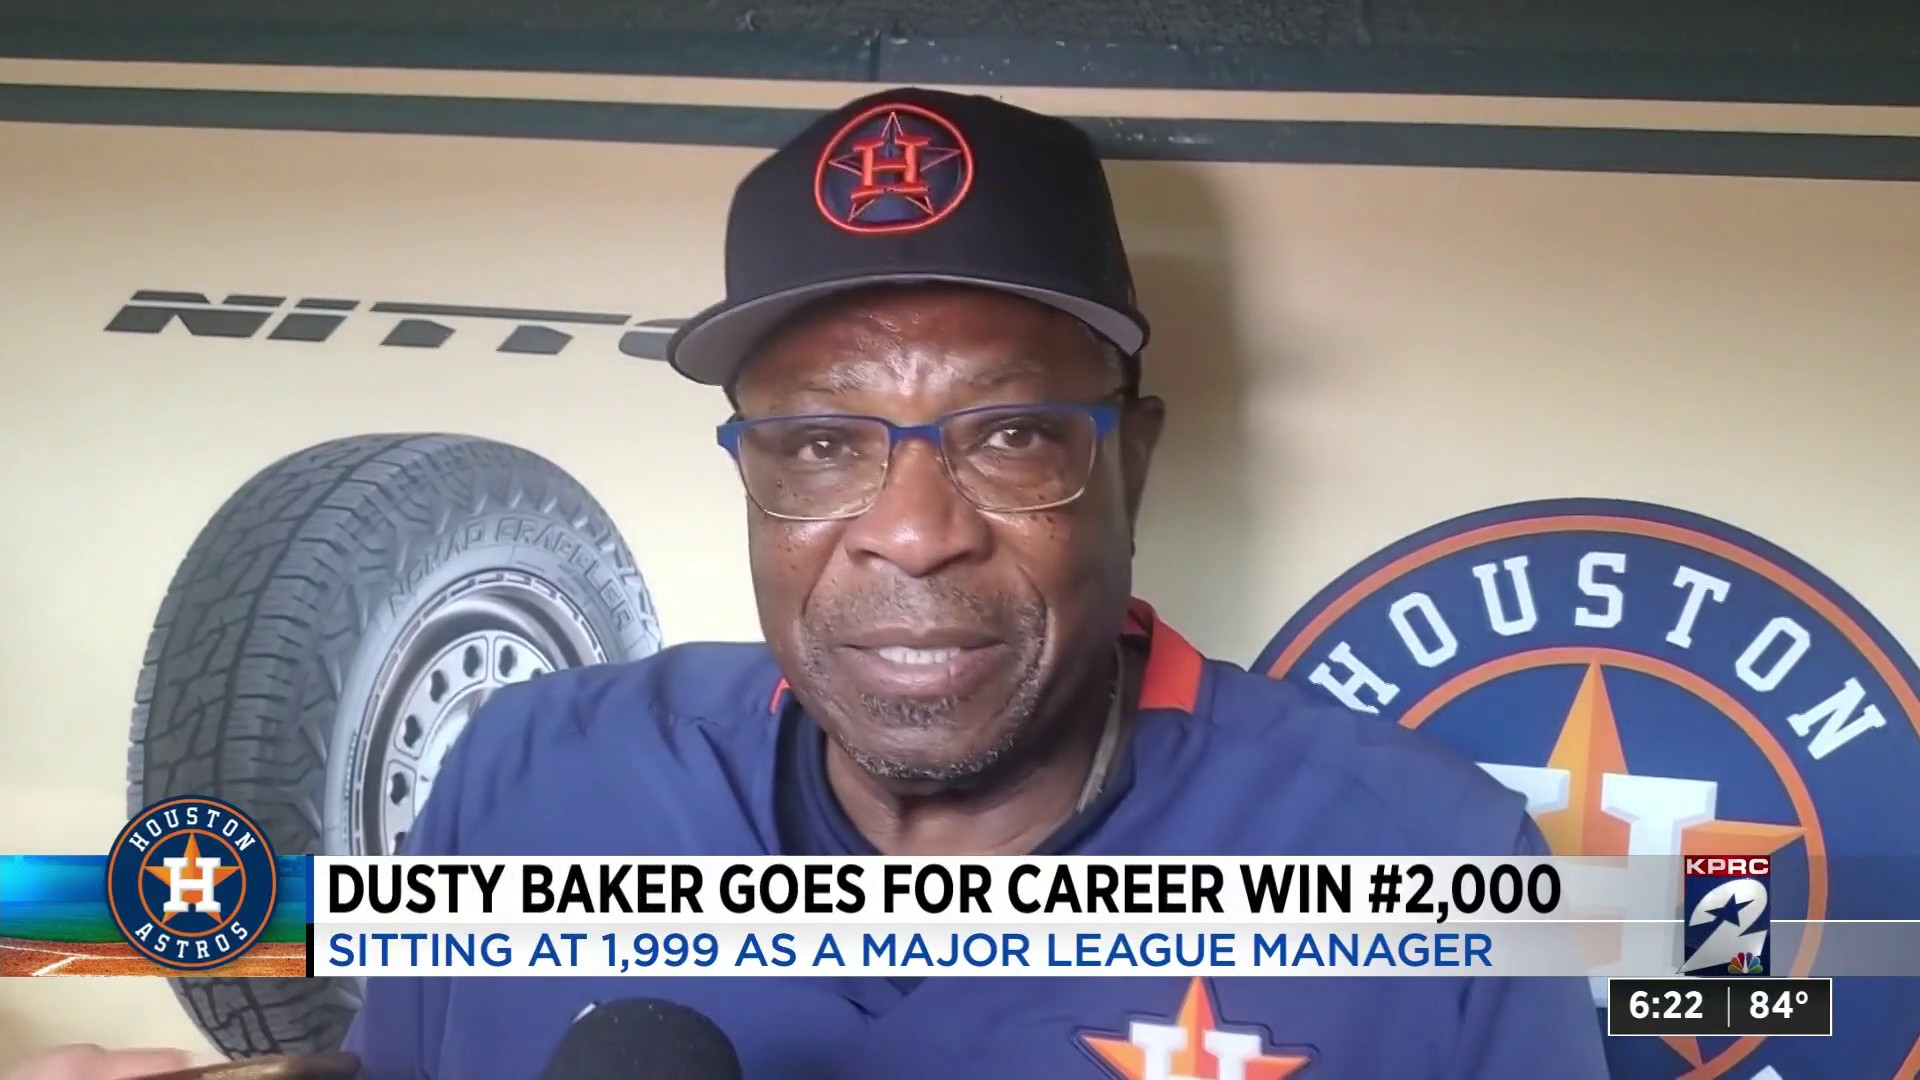 AL #AllStarGame manager Dusty Baker has been in baseball for over